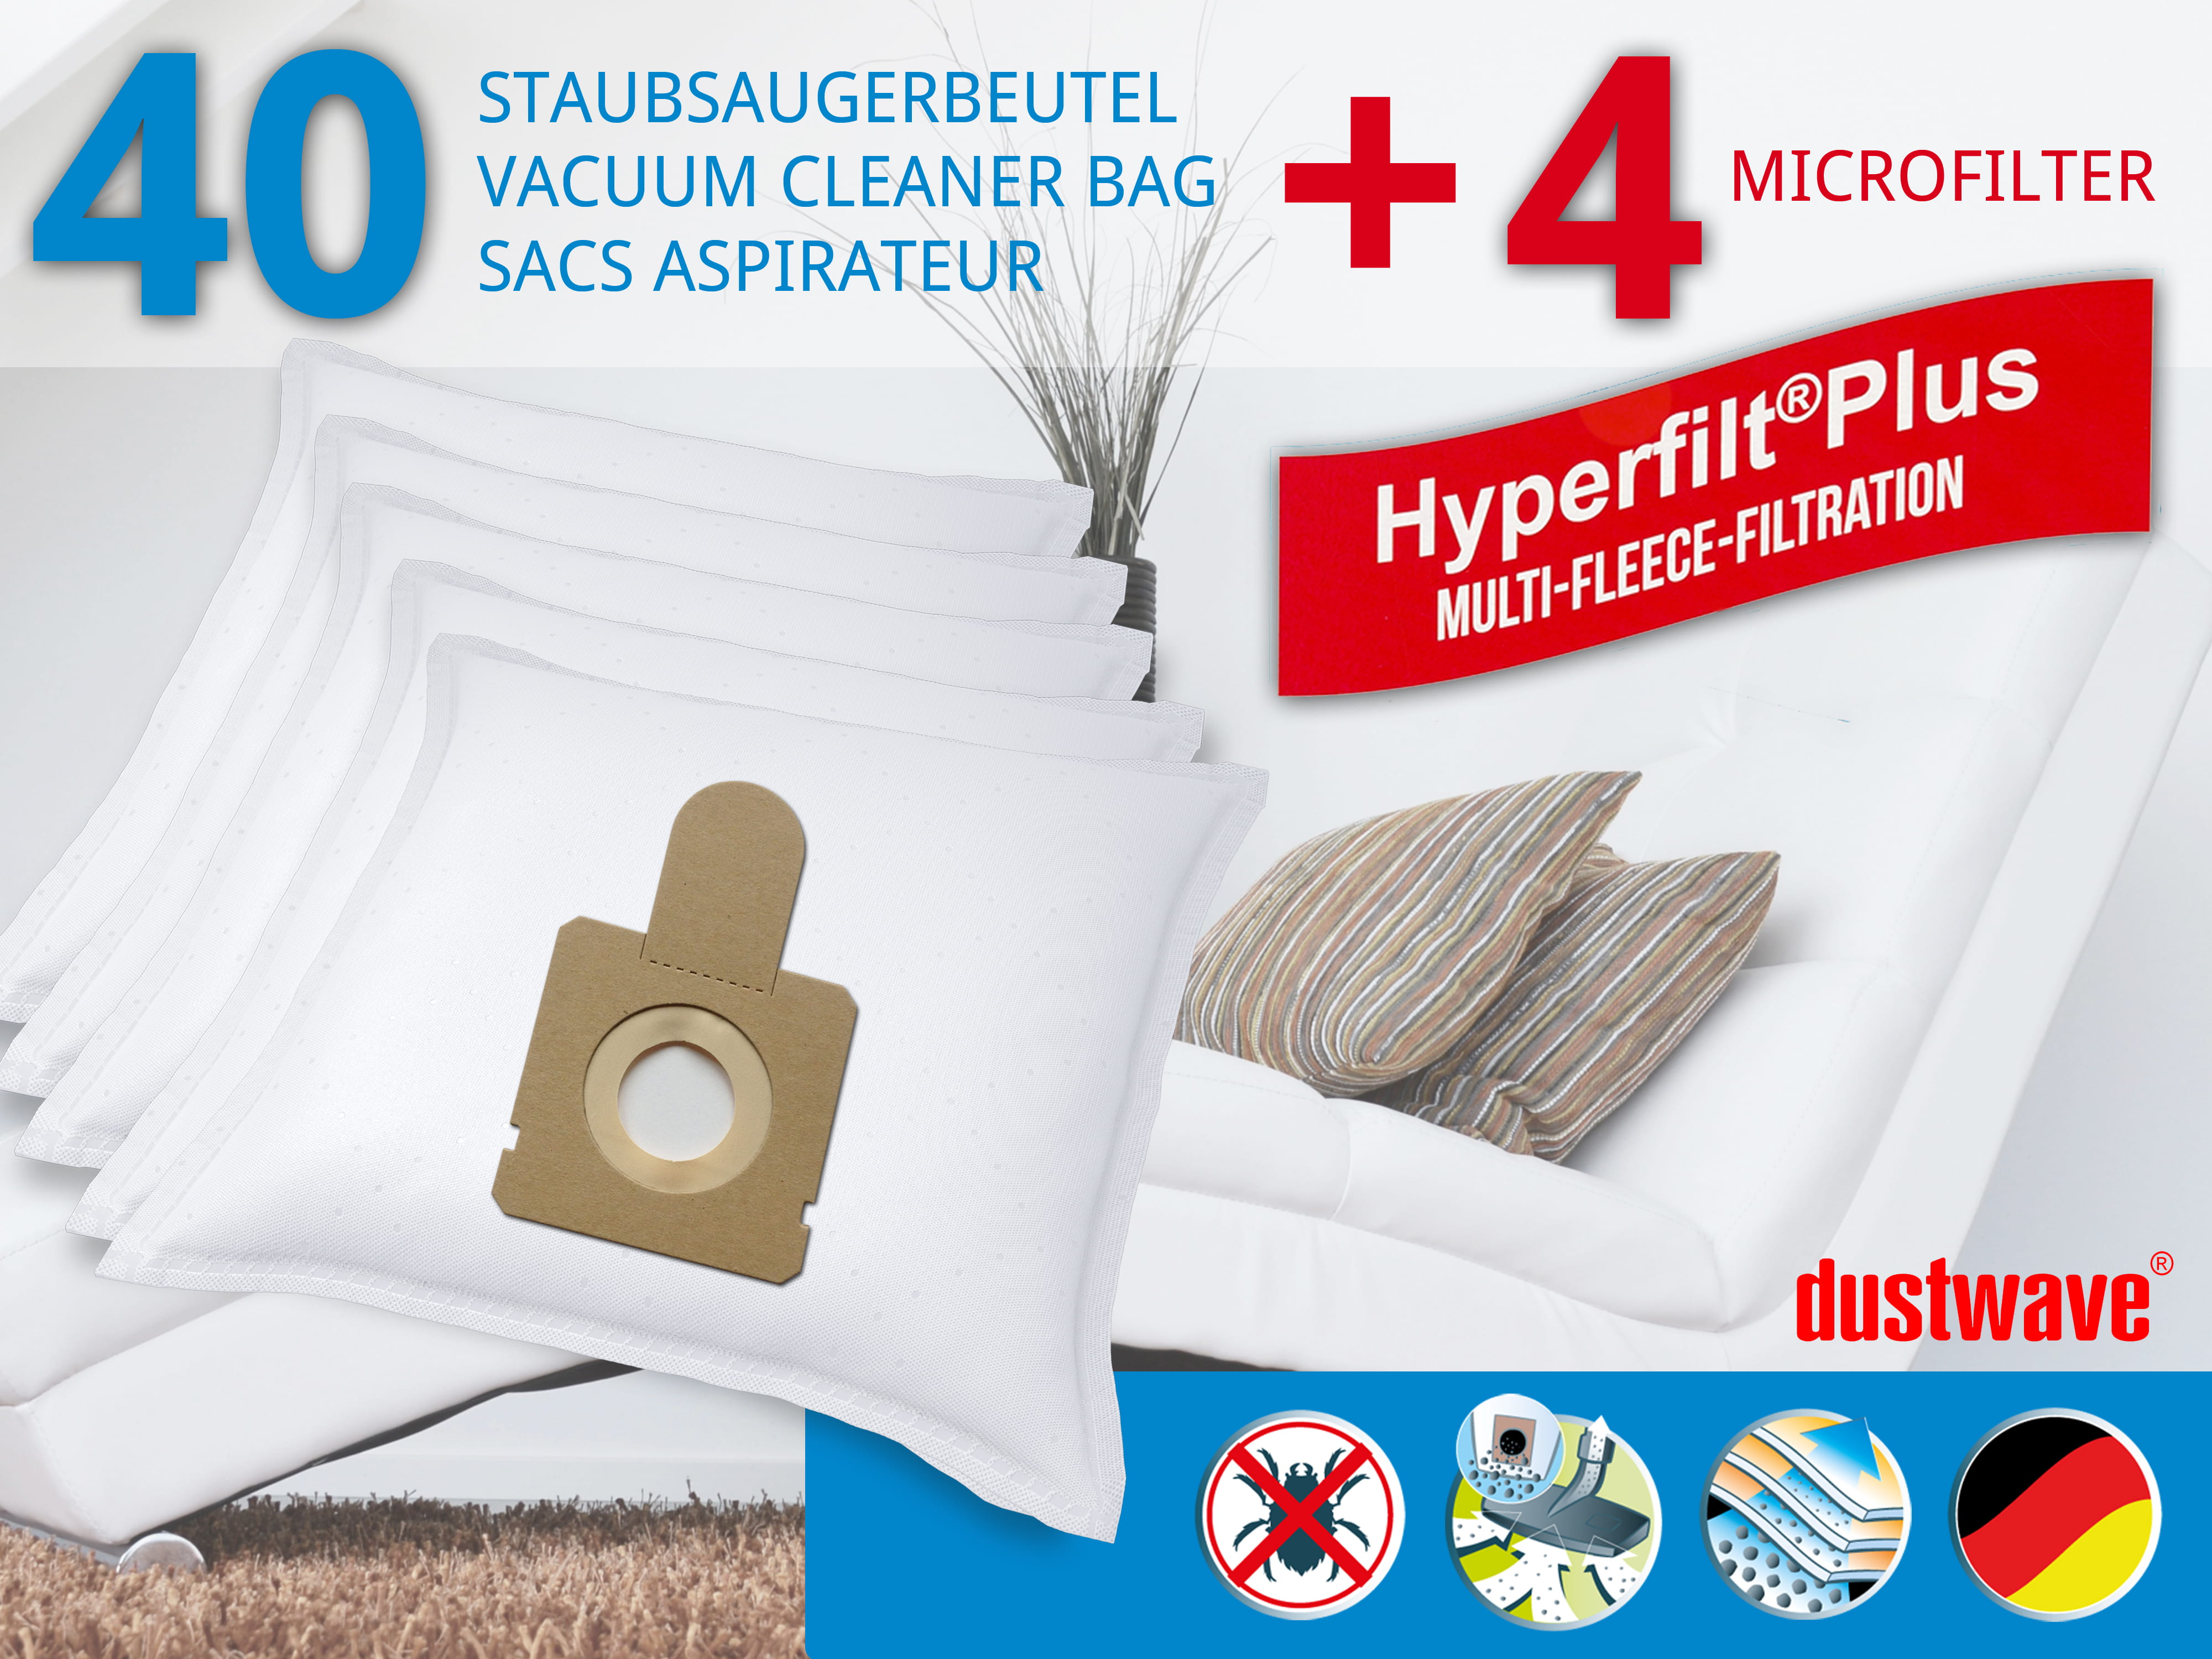 Dustwave® 40 Staubsaugerbeutel für Hoover TFS 5100 FreeSpace - hocheffizient, mehrlagiges Mikrovlies mit Hygieneverschluss - Made in Germany